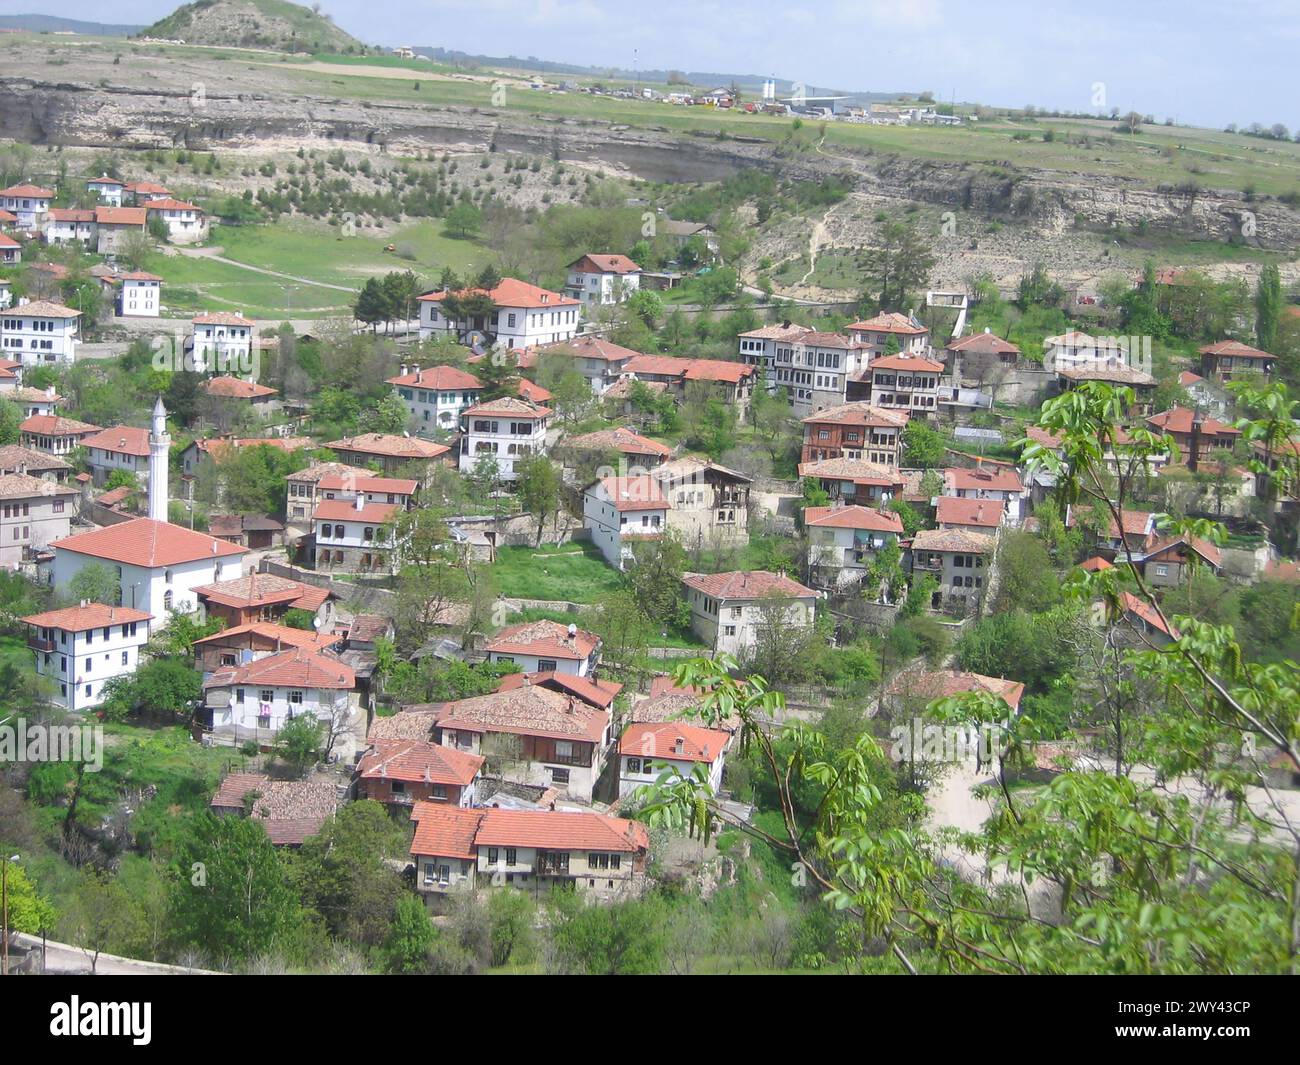 La natura e i tradizionali paesaggi delle case turche in estate dalla vecchia città ottomana. Foto Stock